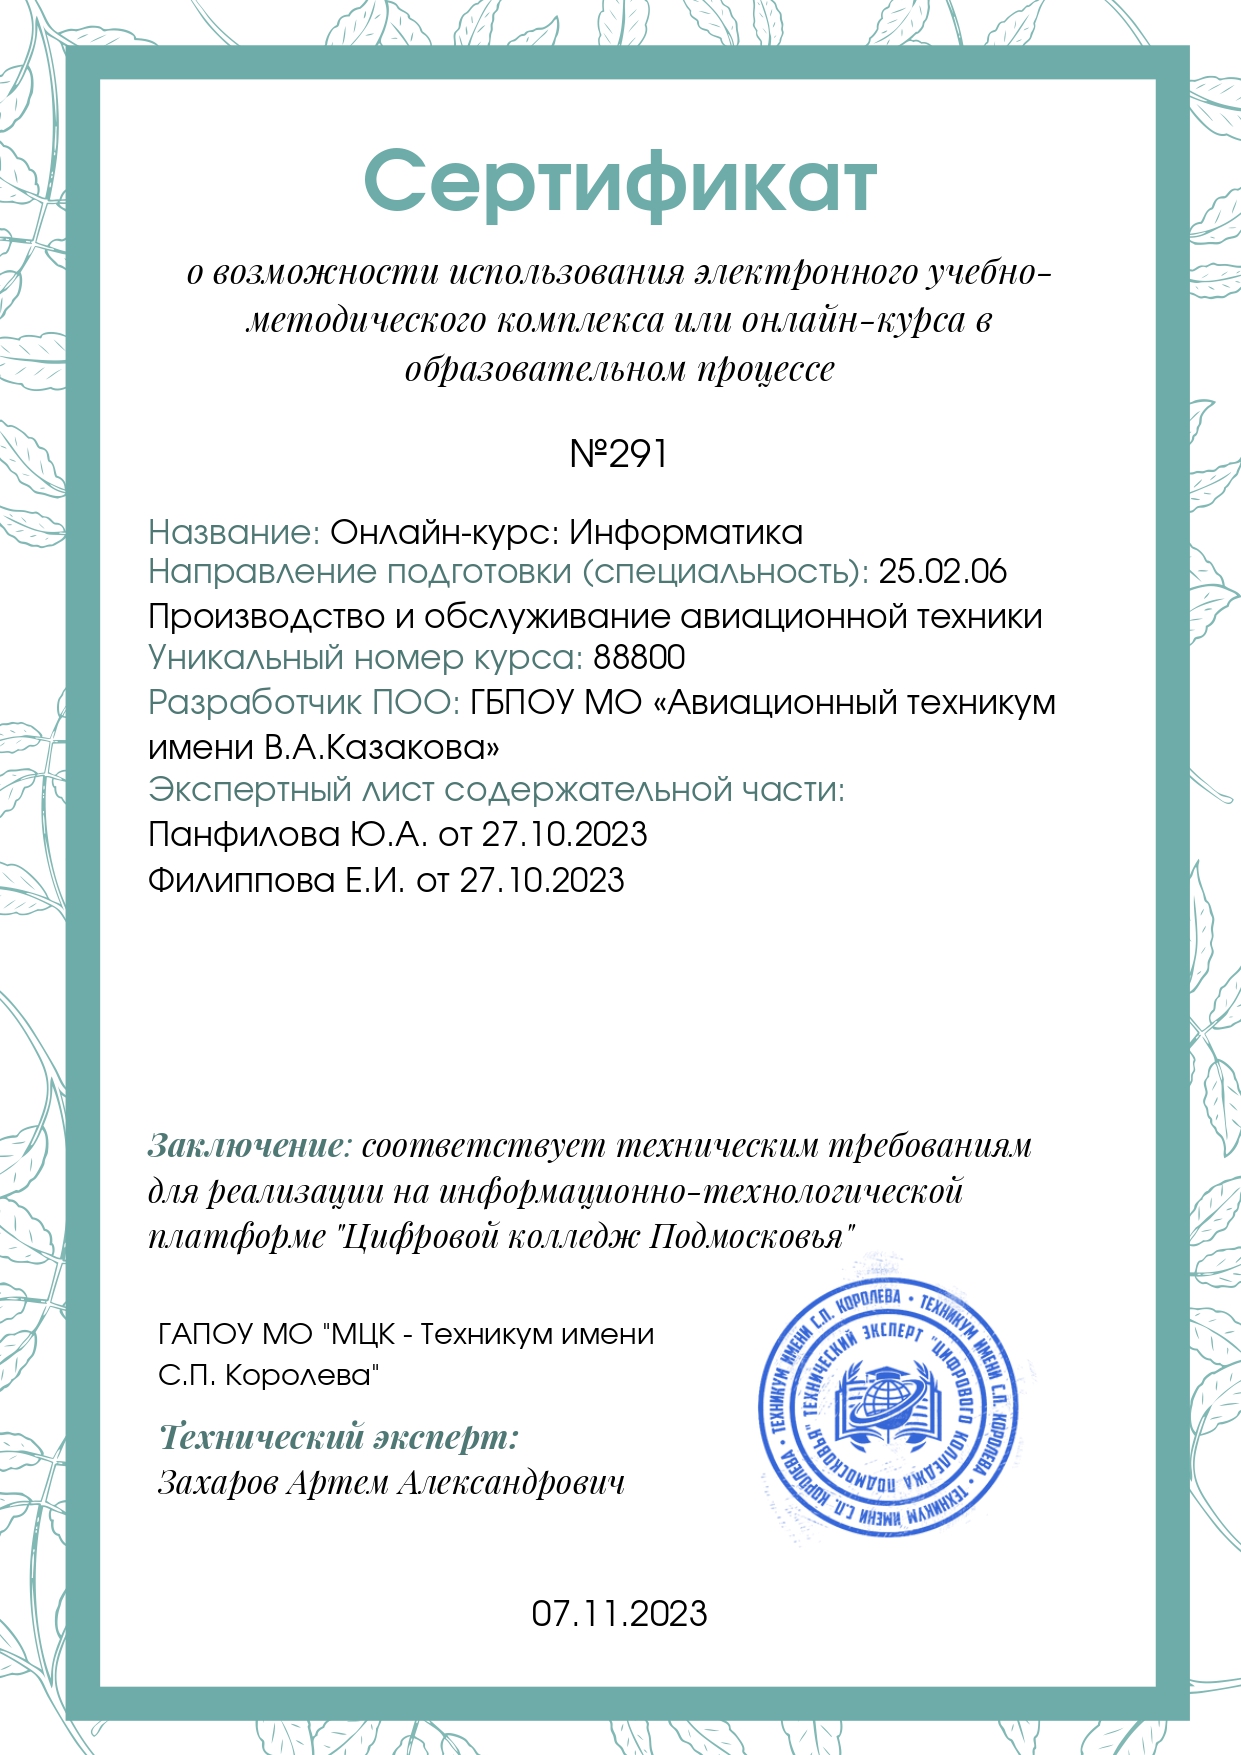 Сертификат онлайн-курс Информатика